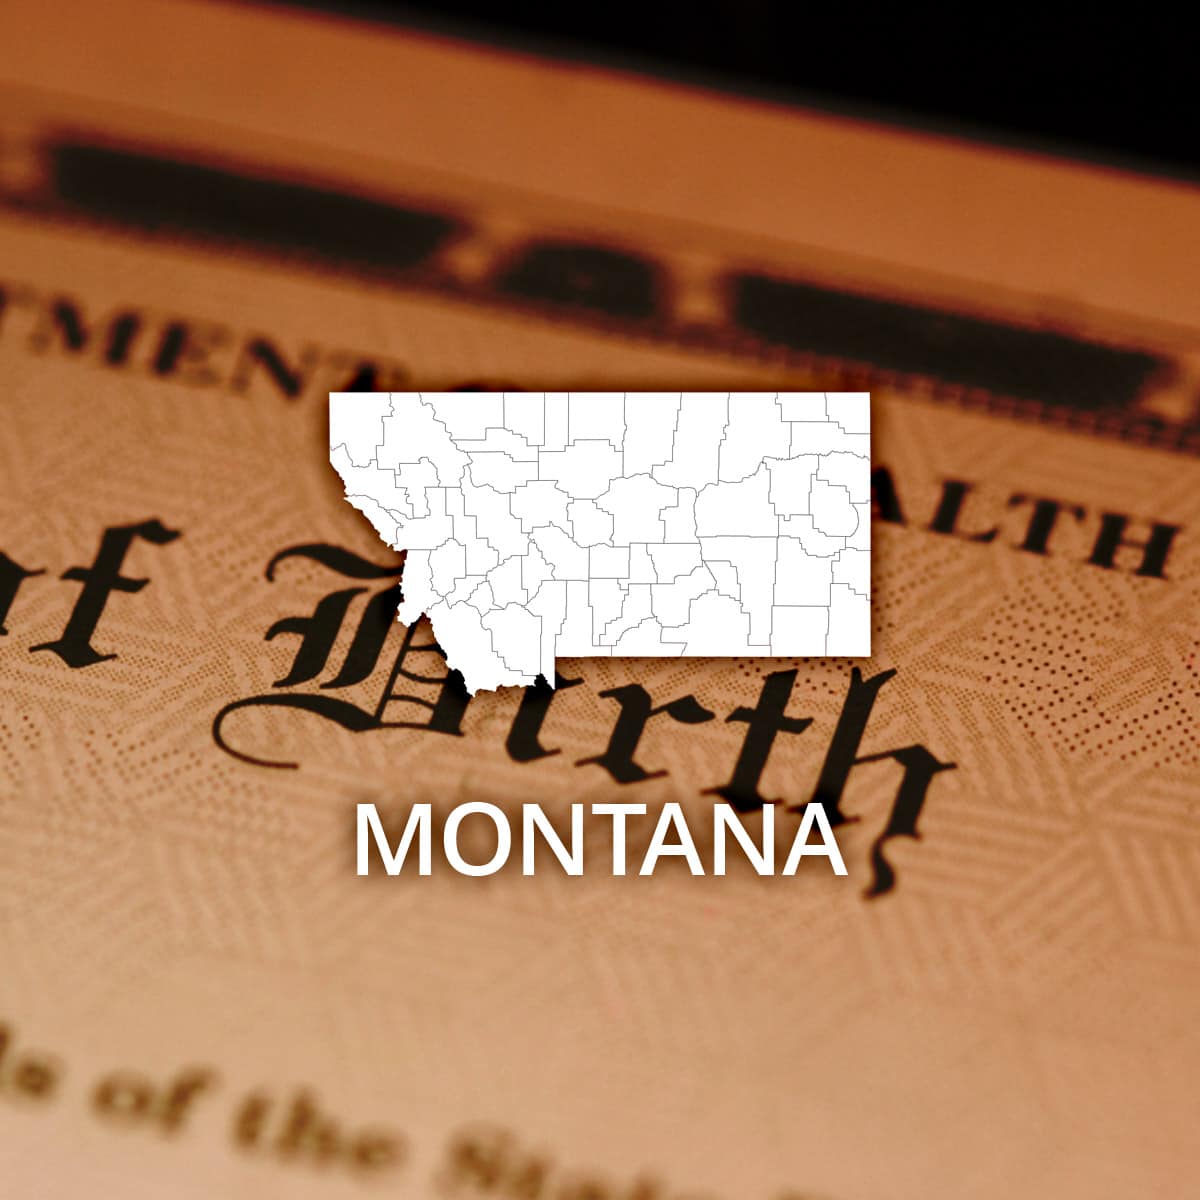 Montana Public Birth Records Search Online RecordsFinder